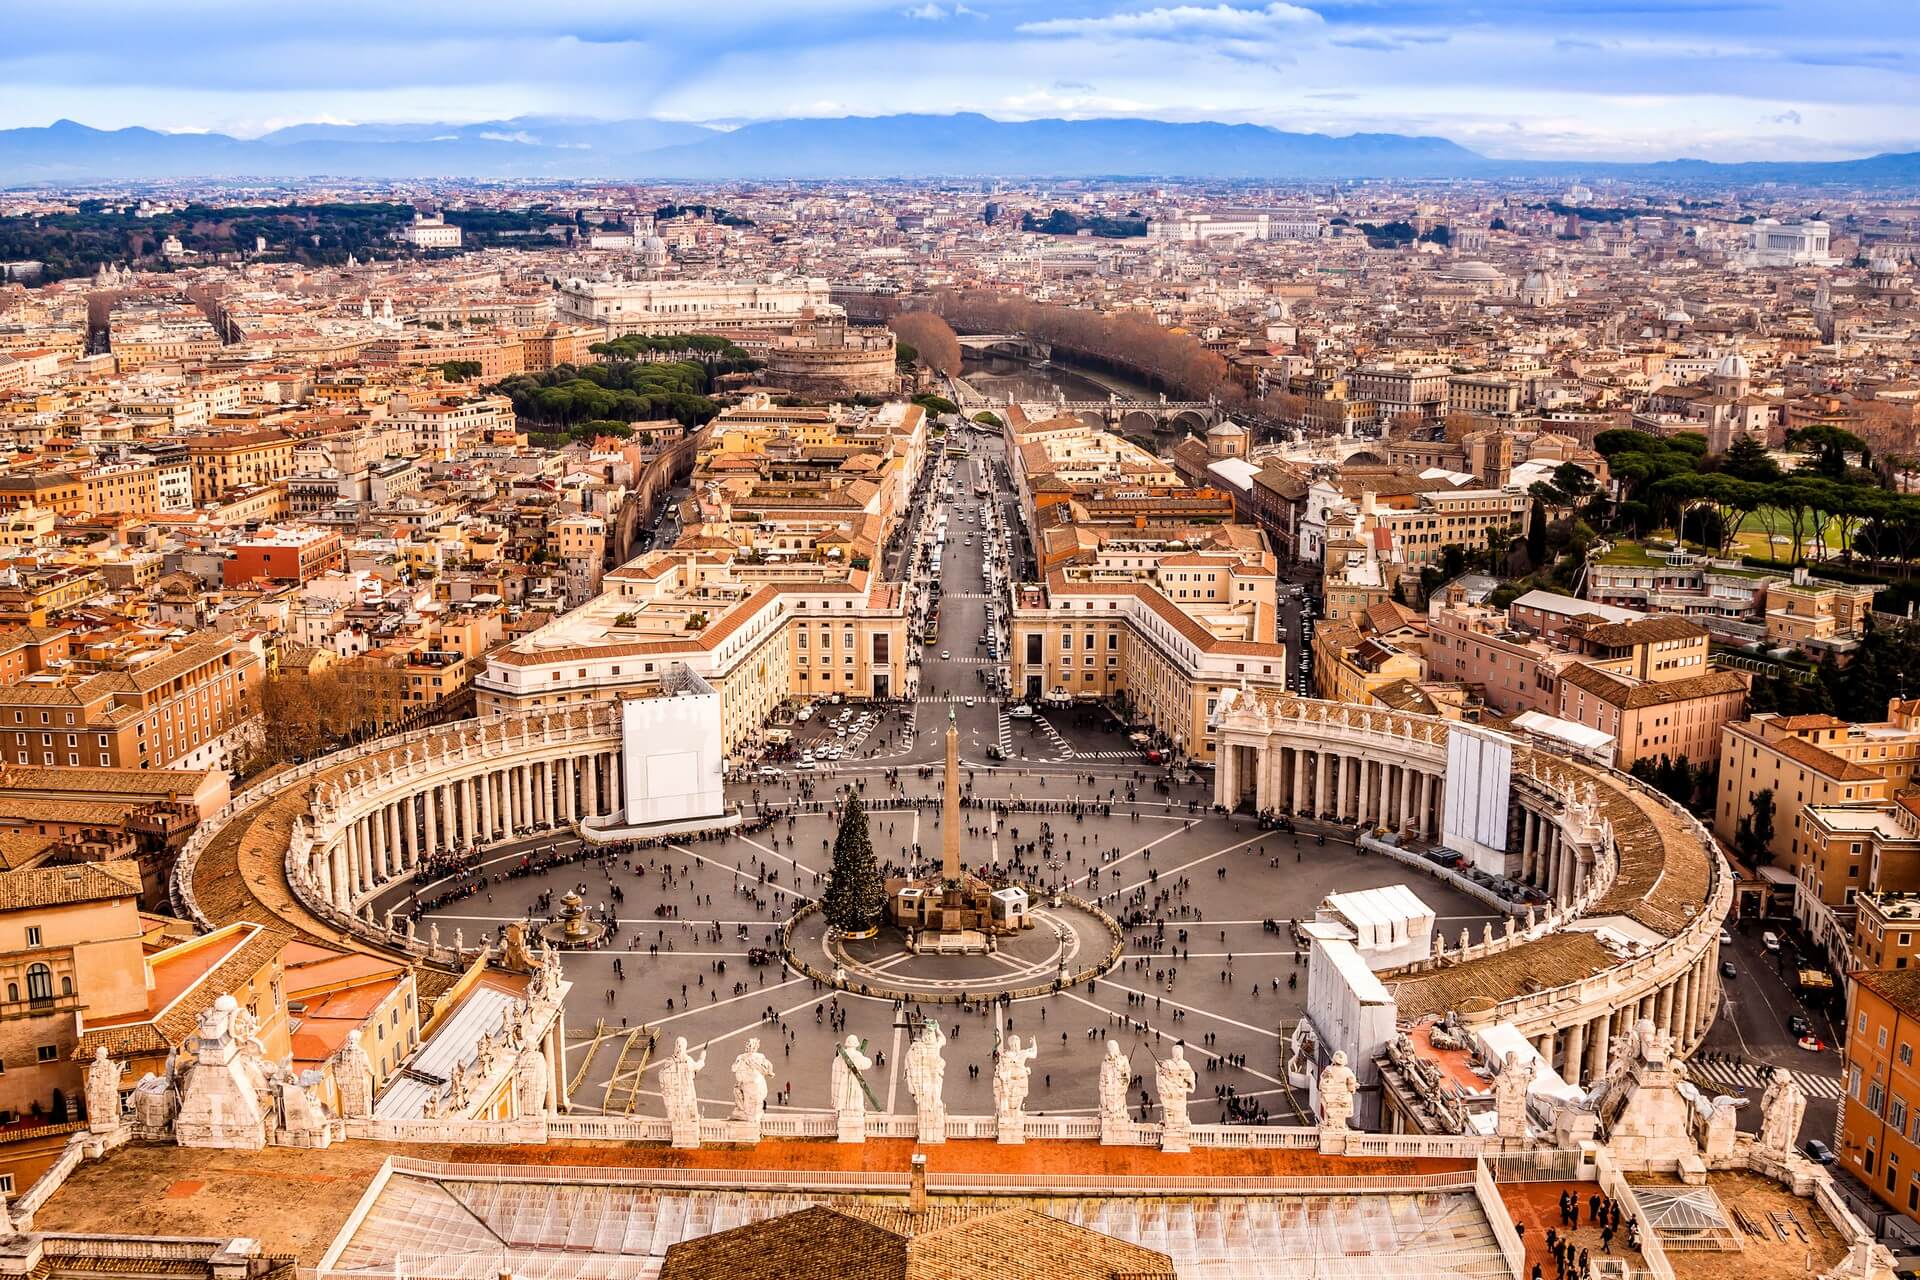 Roma, Italia. Famosa Piazza San Pietro in Vaticano e vista aerea della città.